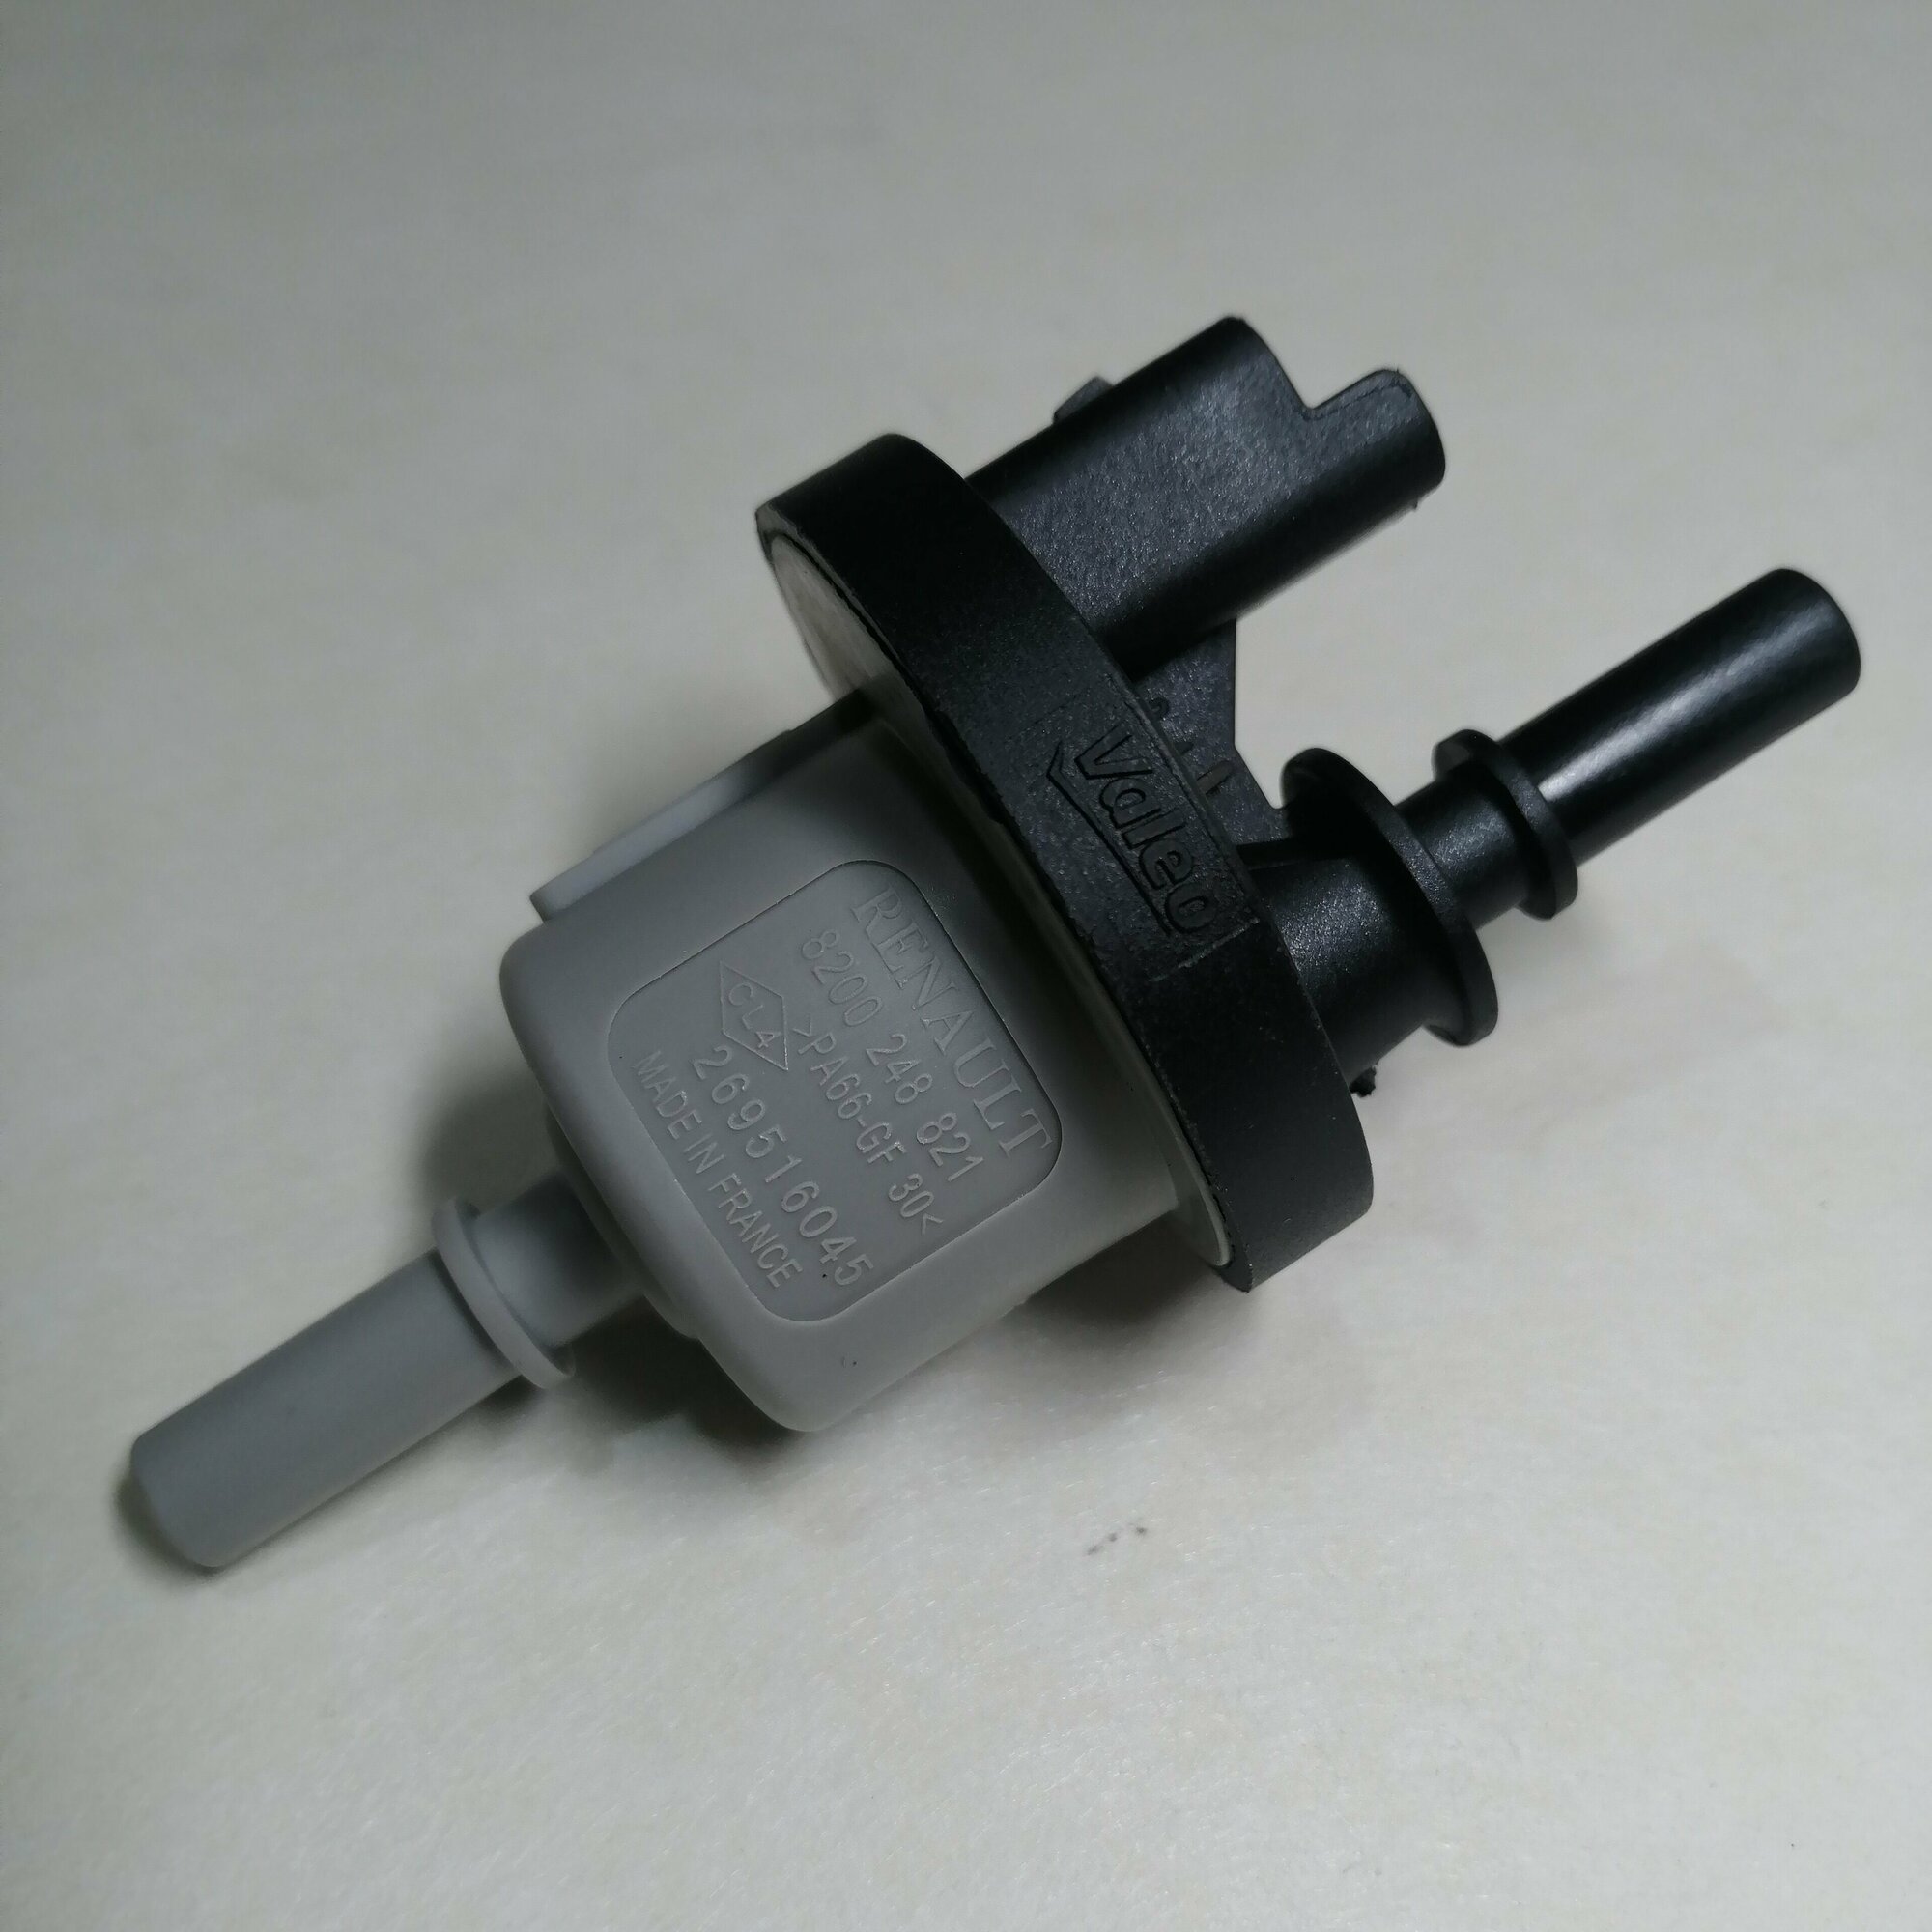 Клапан продувки адсорбера Lada Vesta, X-Ray - Renault. 8200248821 Лада Веста